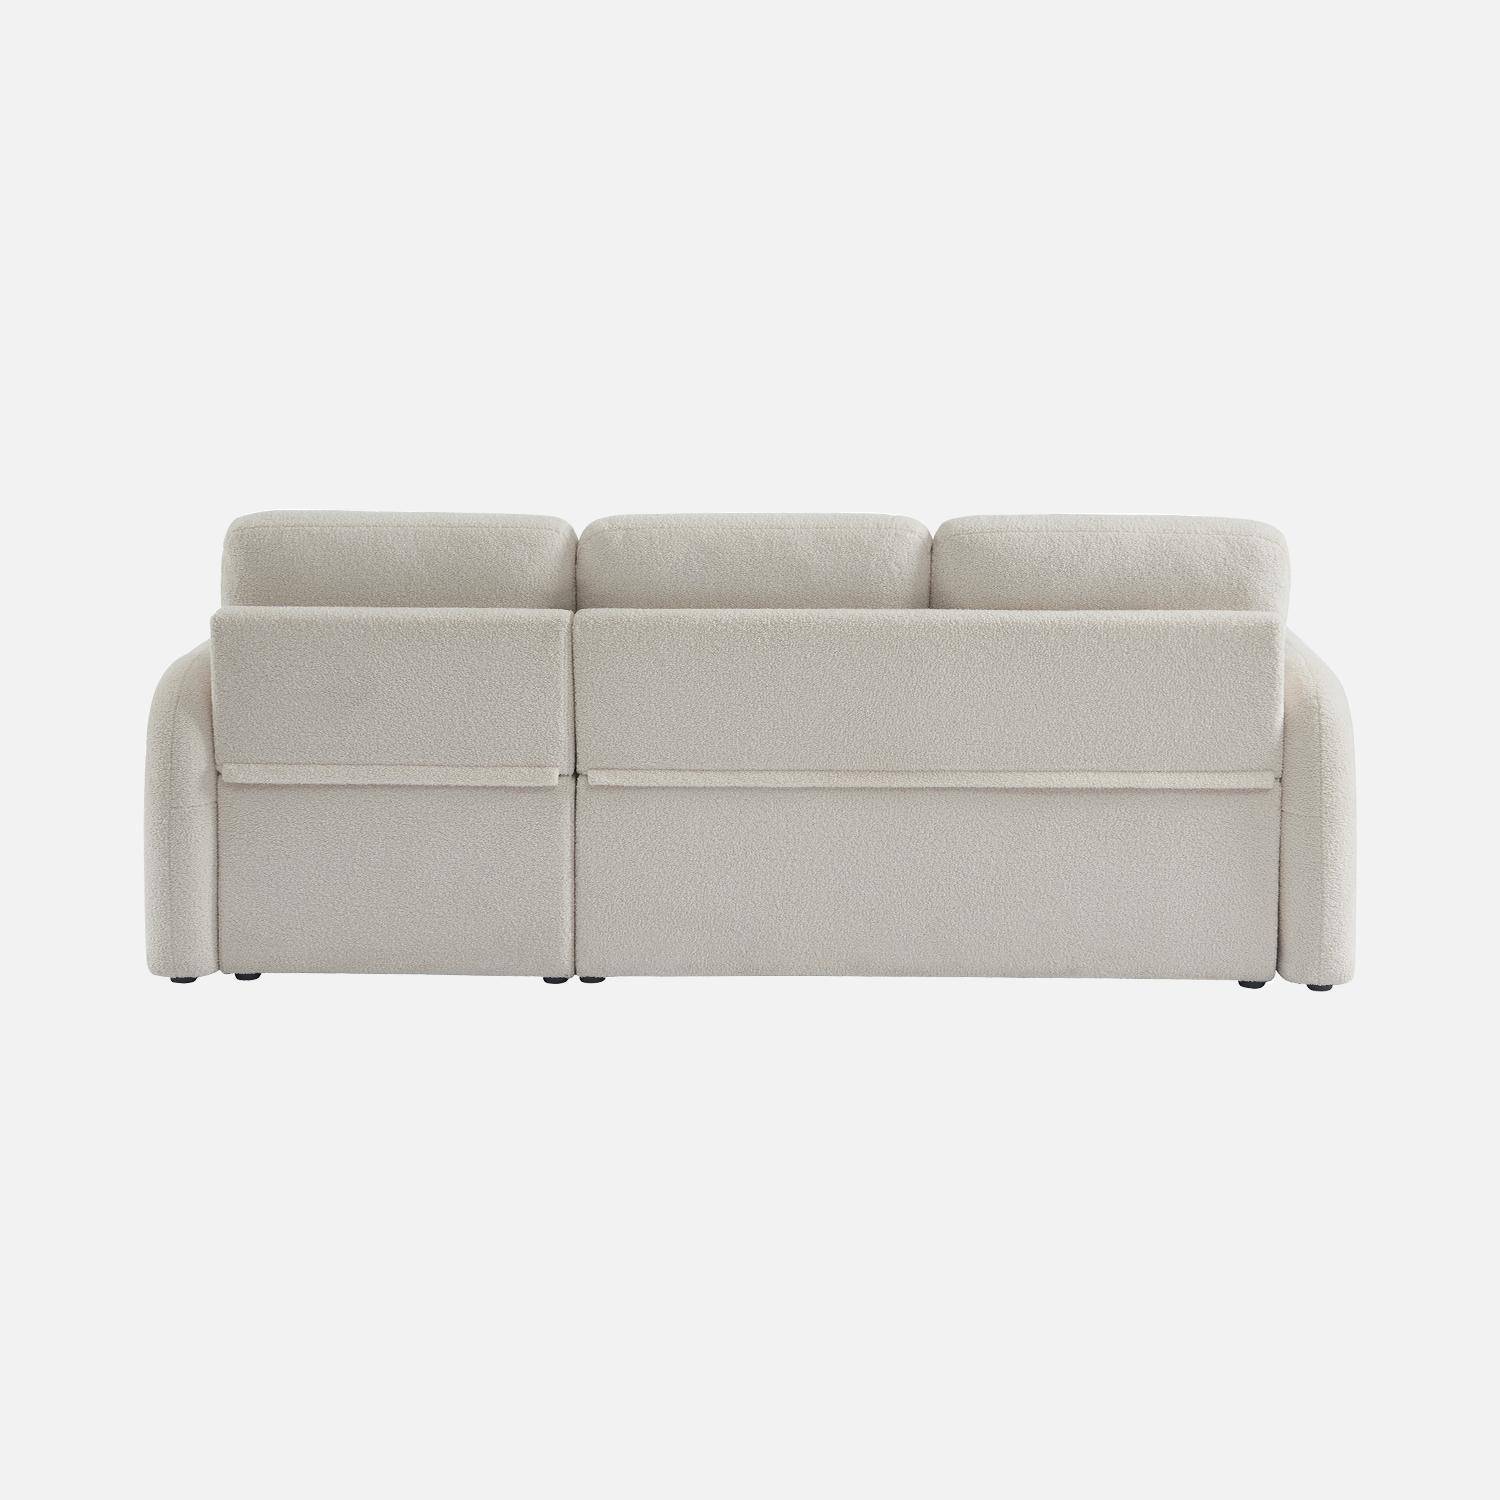 Sofá cama esquinero de 3 plazas en tejido borreguito blanco, sillón esquinero reversible, caja de almacenaje, Milano Photo6